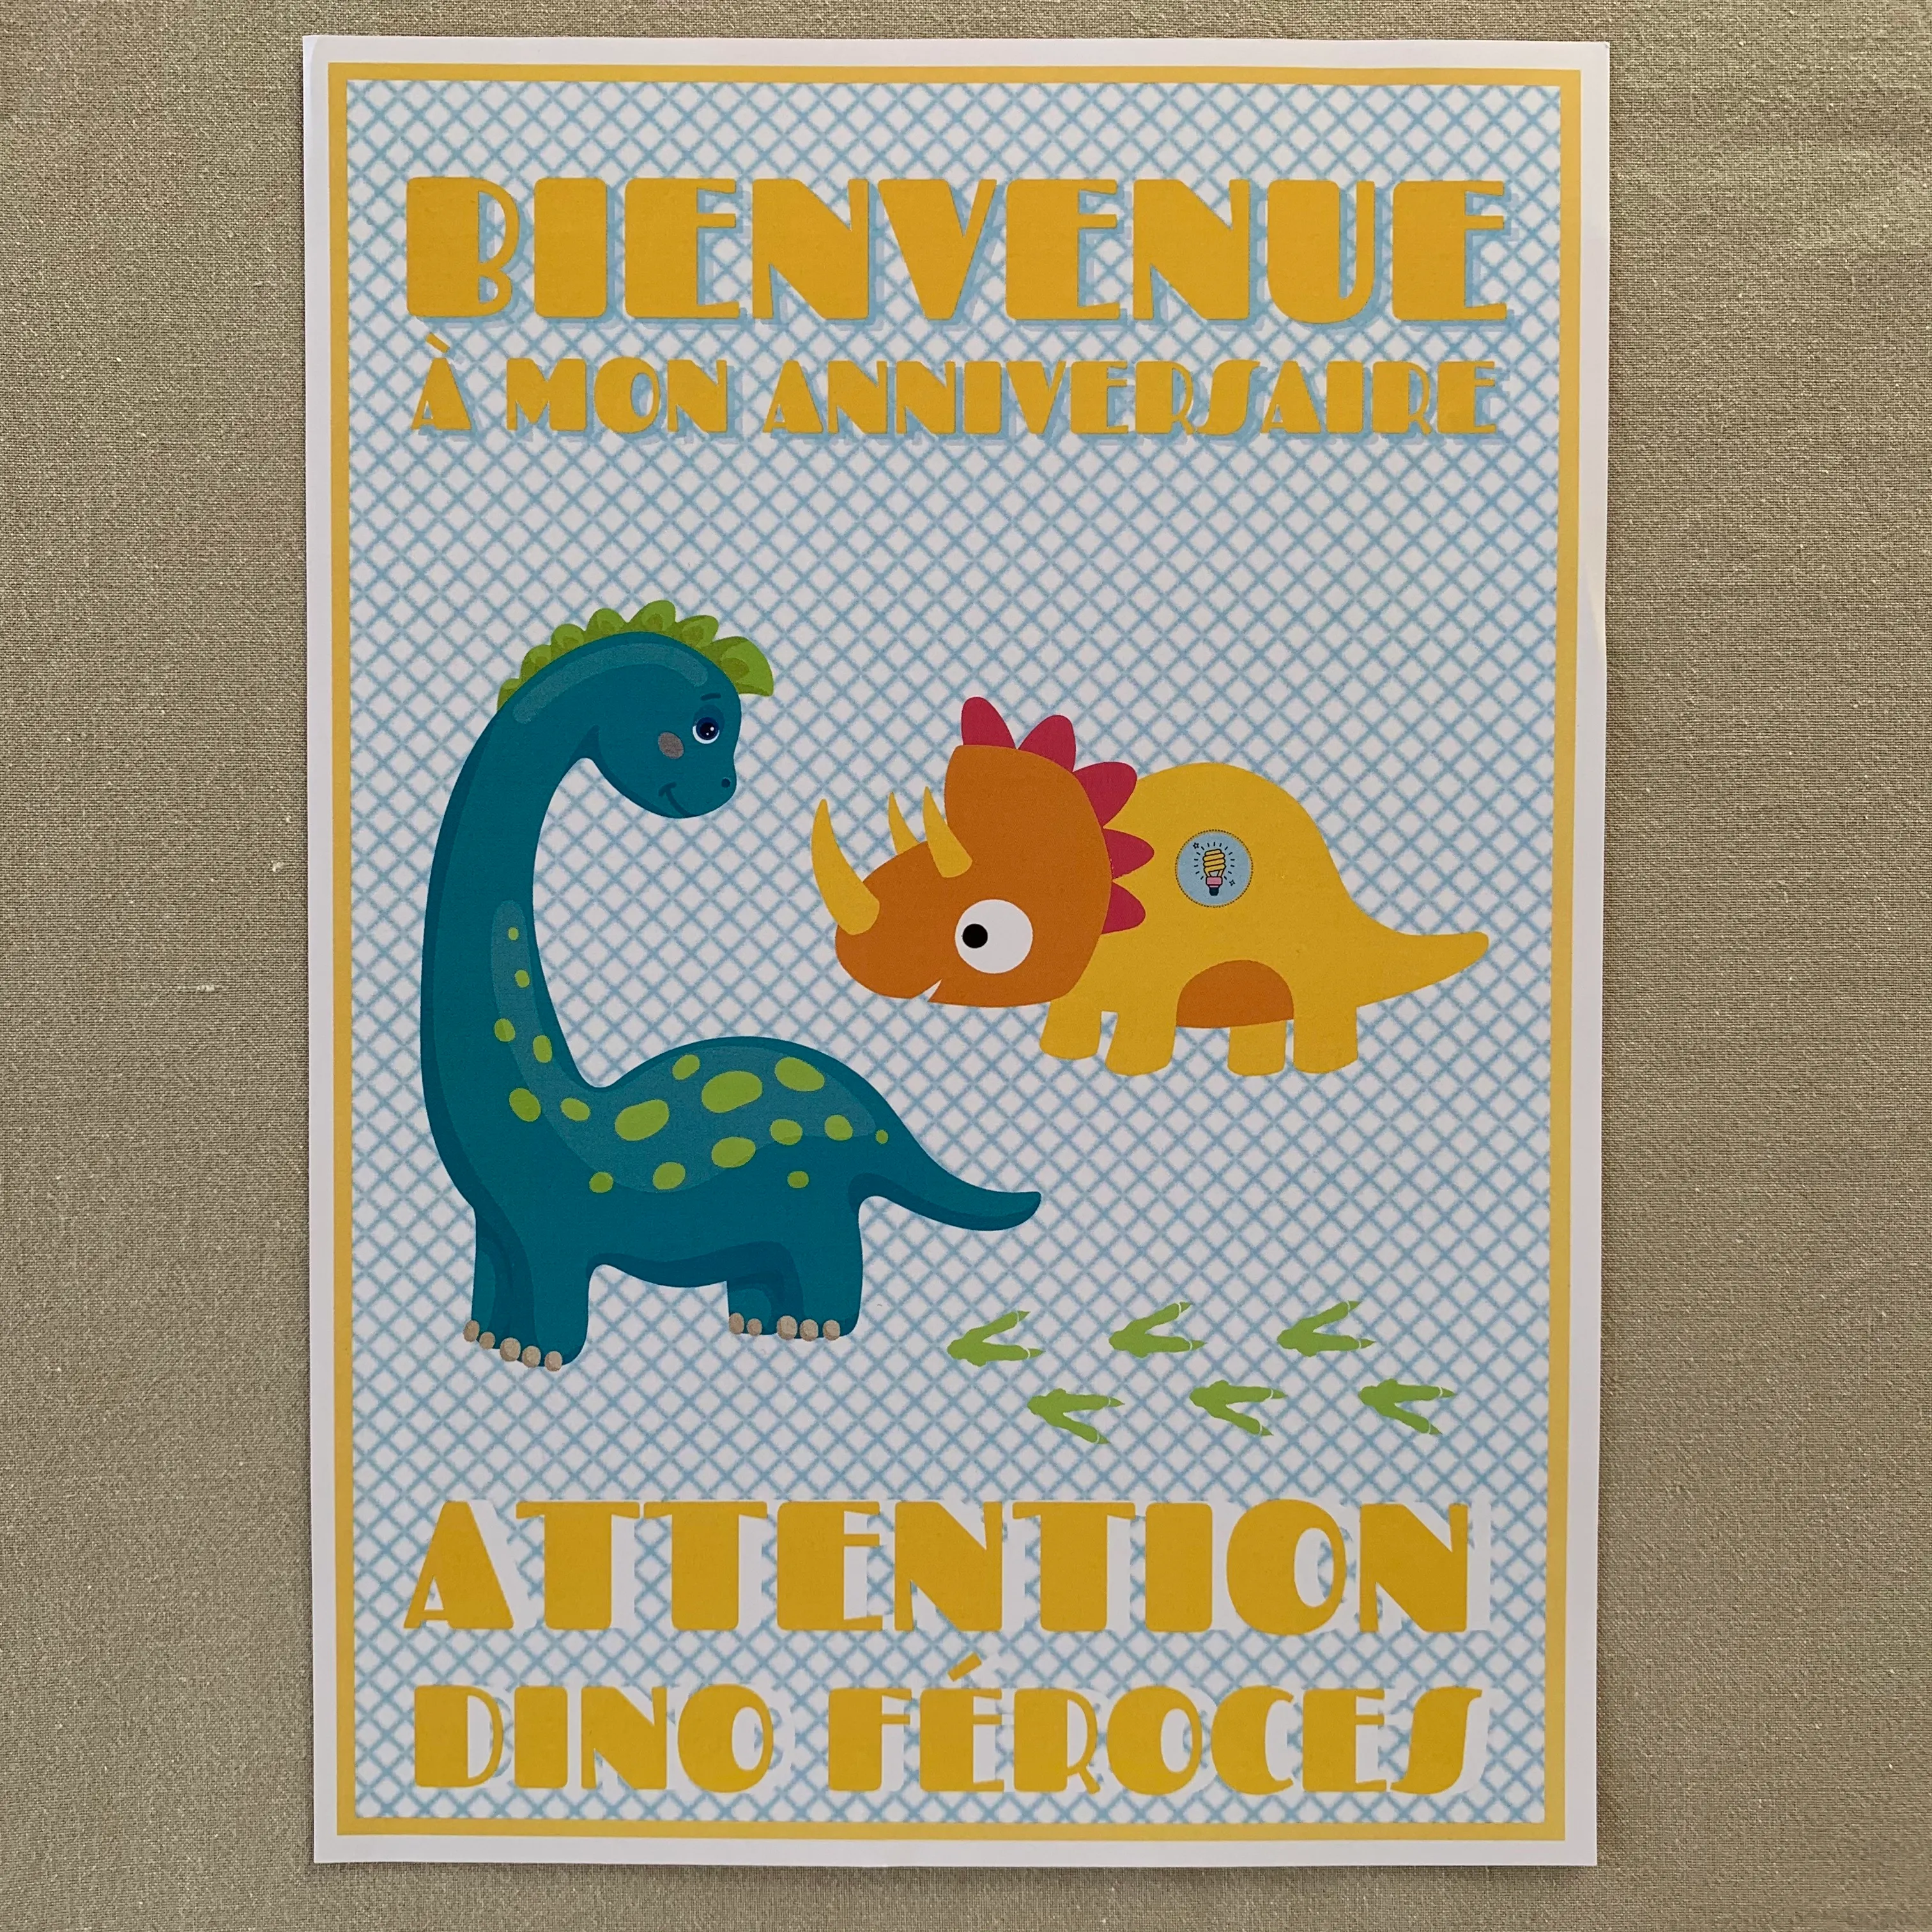 Anniversaire dinosaure - Toute la deco anniversaire dinosaure